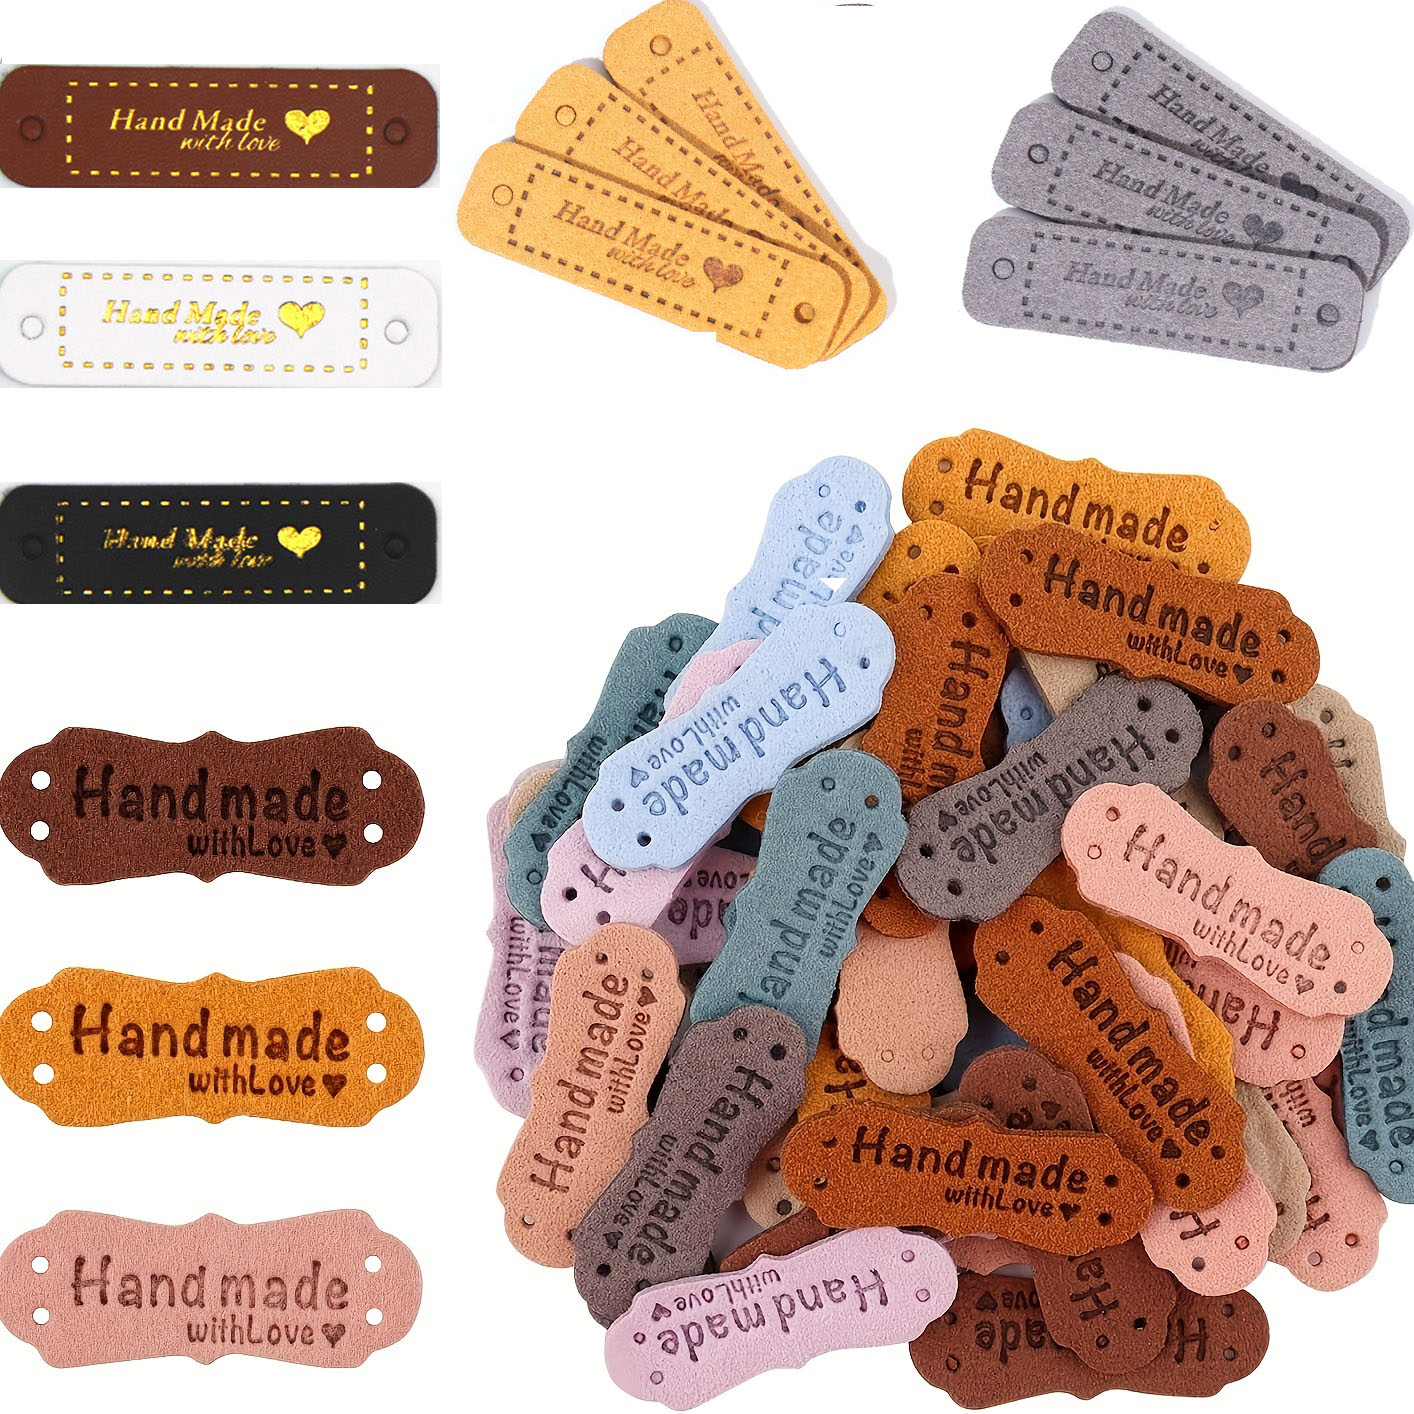  Mod. RO03 - Etiquetas redondas personalizadas hechas a mano por  etiquetas - Etiquetas de cuero curtido vegetal para artículos de ganchillo,  tejido (texto personalizado - 15 piezas) : Arte y Manualidades